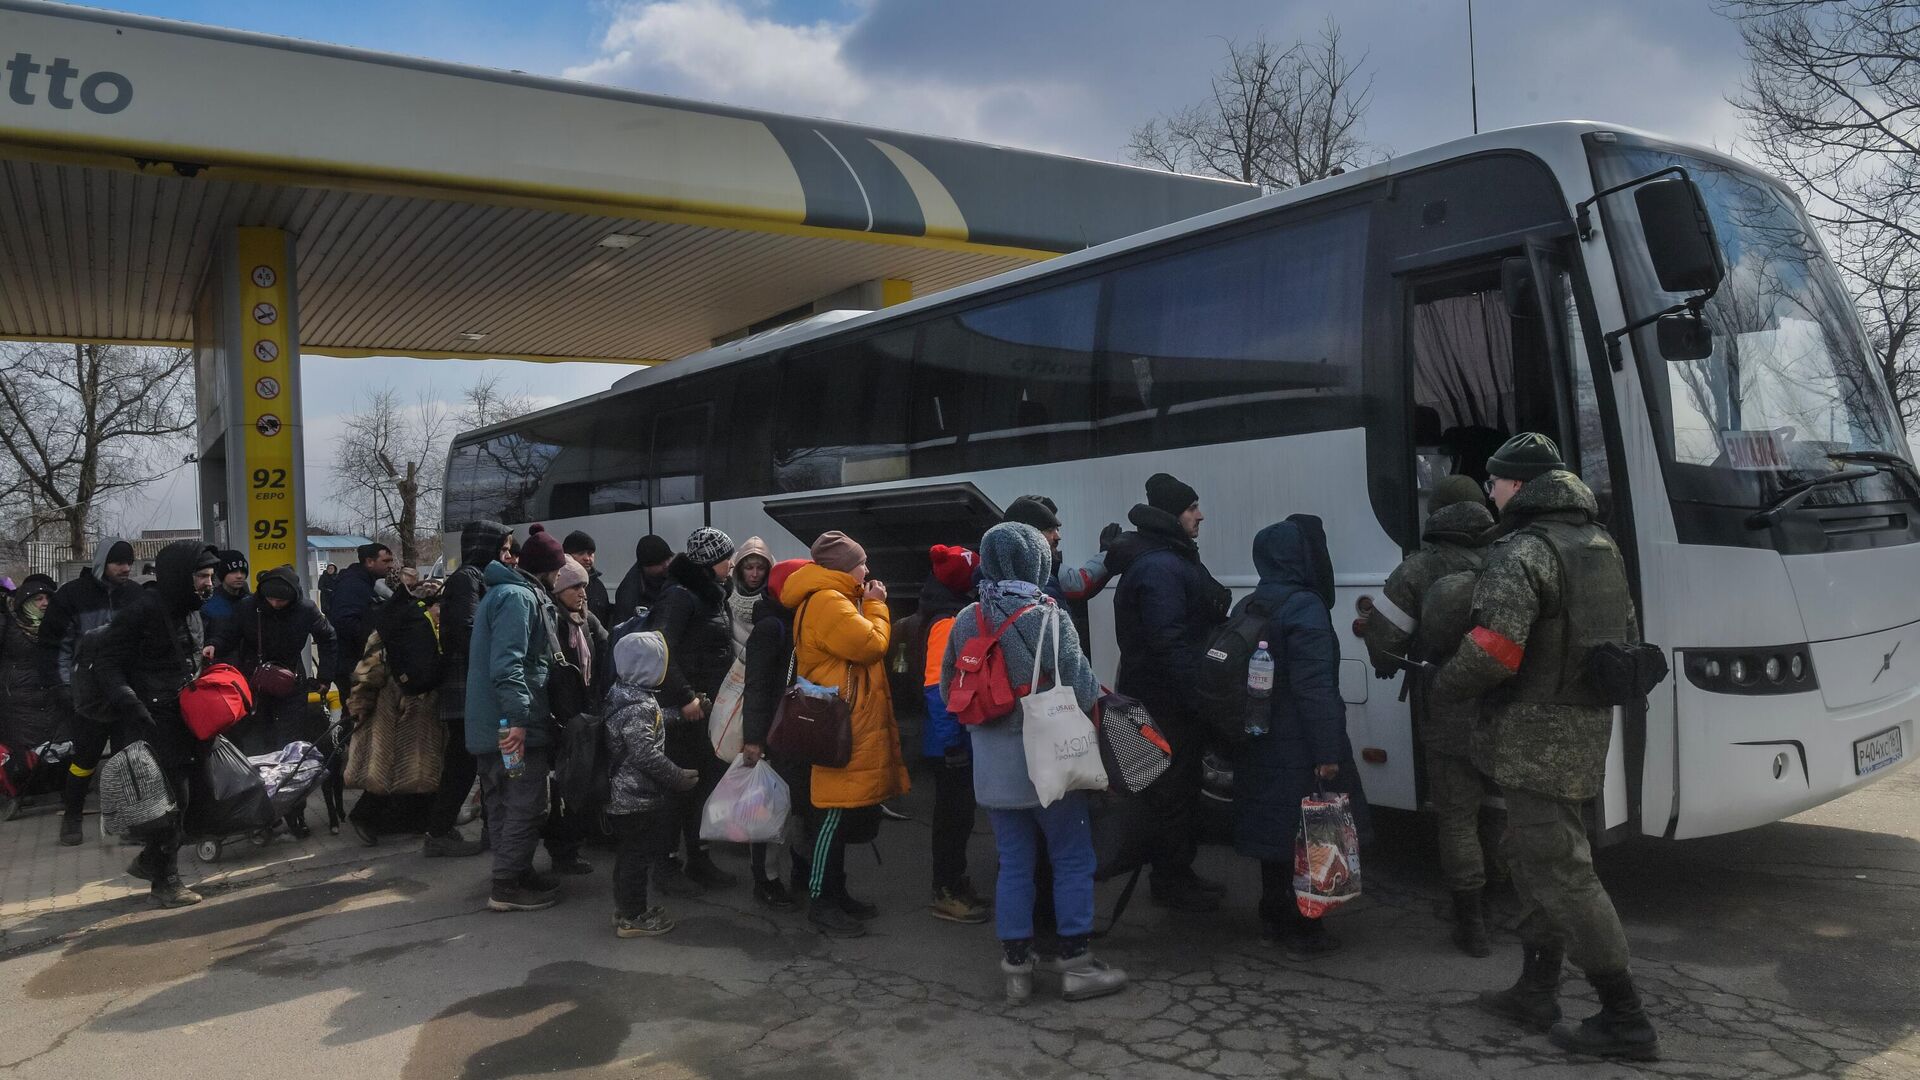 Беженцы готовятся к посадке в автобус на Запорожском шоссе в Мариуполе  - РИА Новости, 1920, 22.04.2022